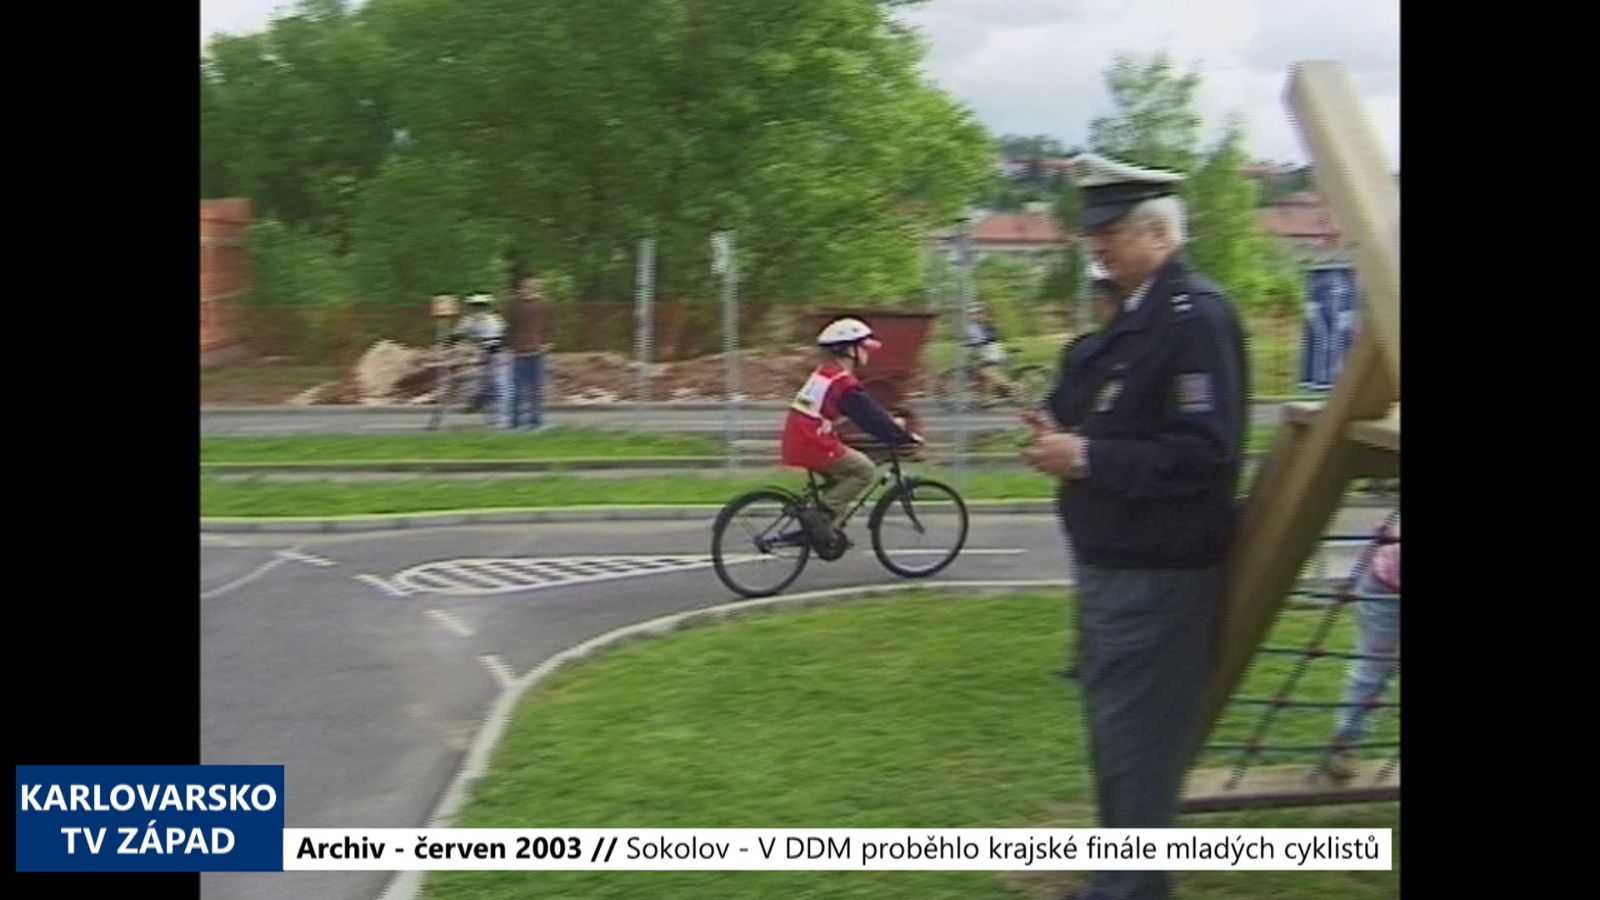 2003 – Sokolov: V DDM proběhlo krajské finále mladých cyklistů (TV Západ)